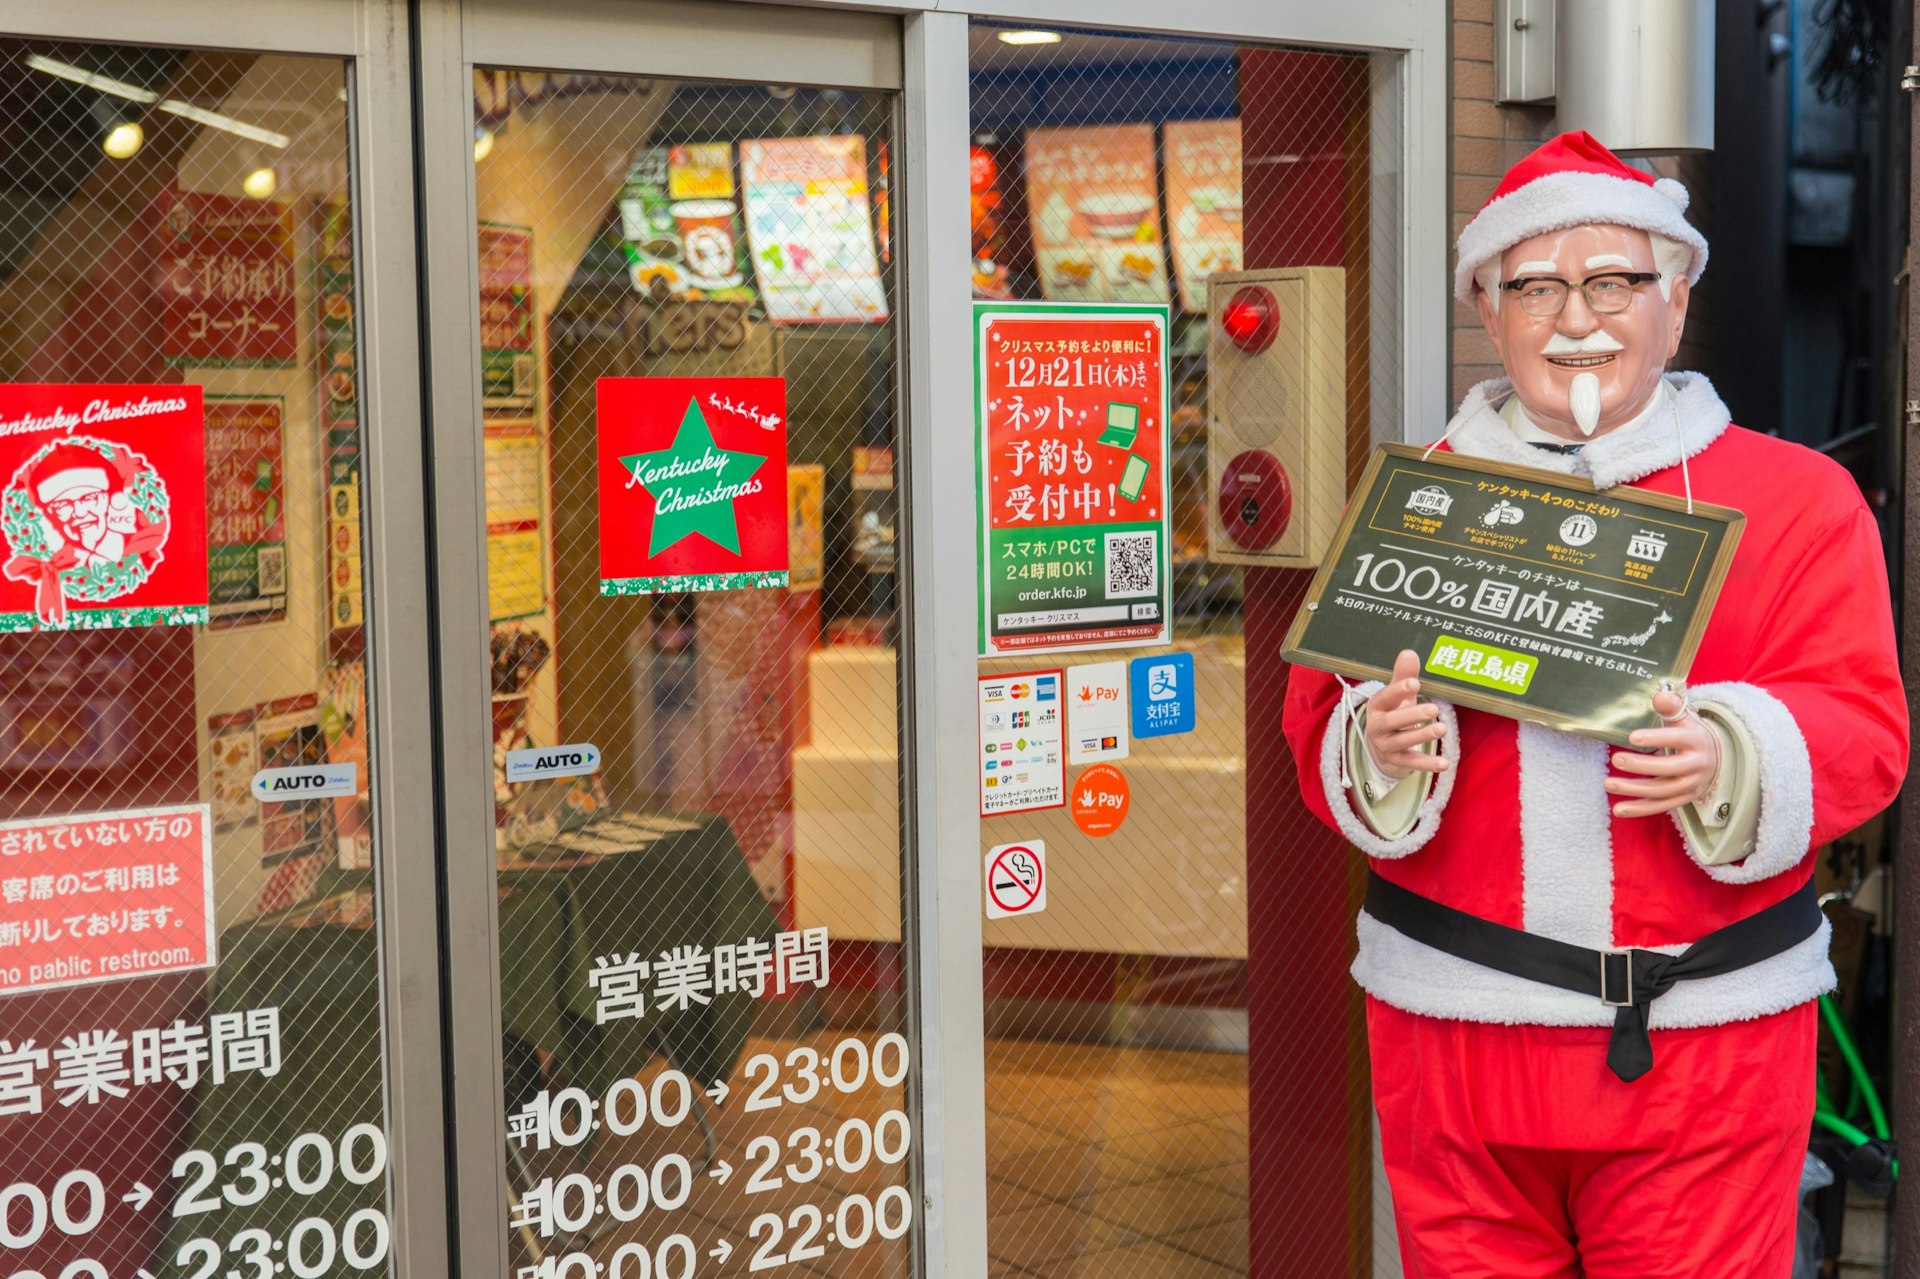 En staty av Kentucky Fried Chicken-maskot överste Sanders sitter utanför en butiksfront i Japan. 